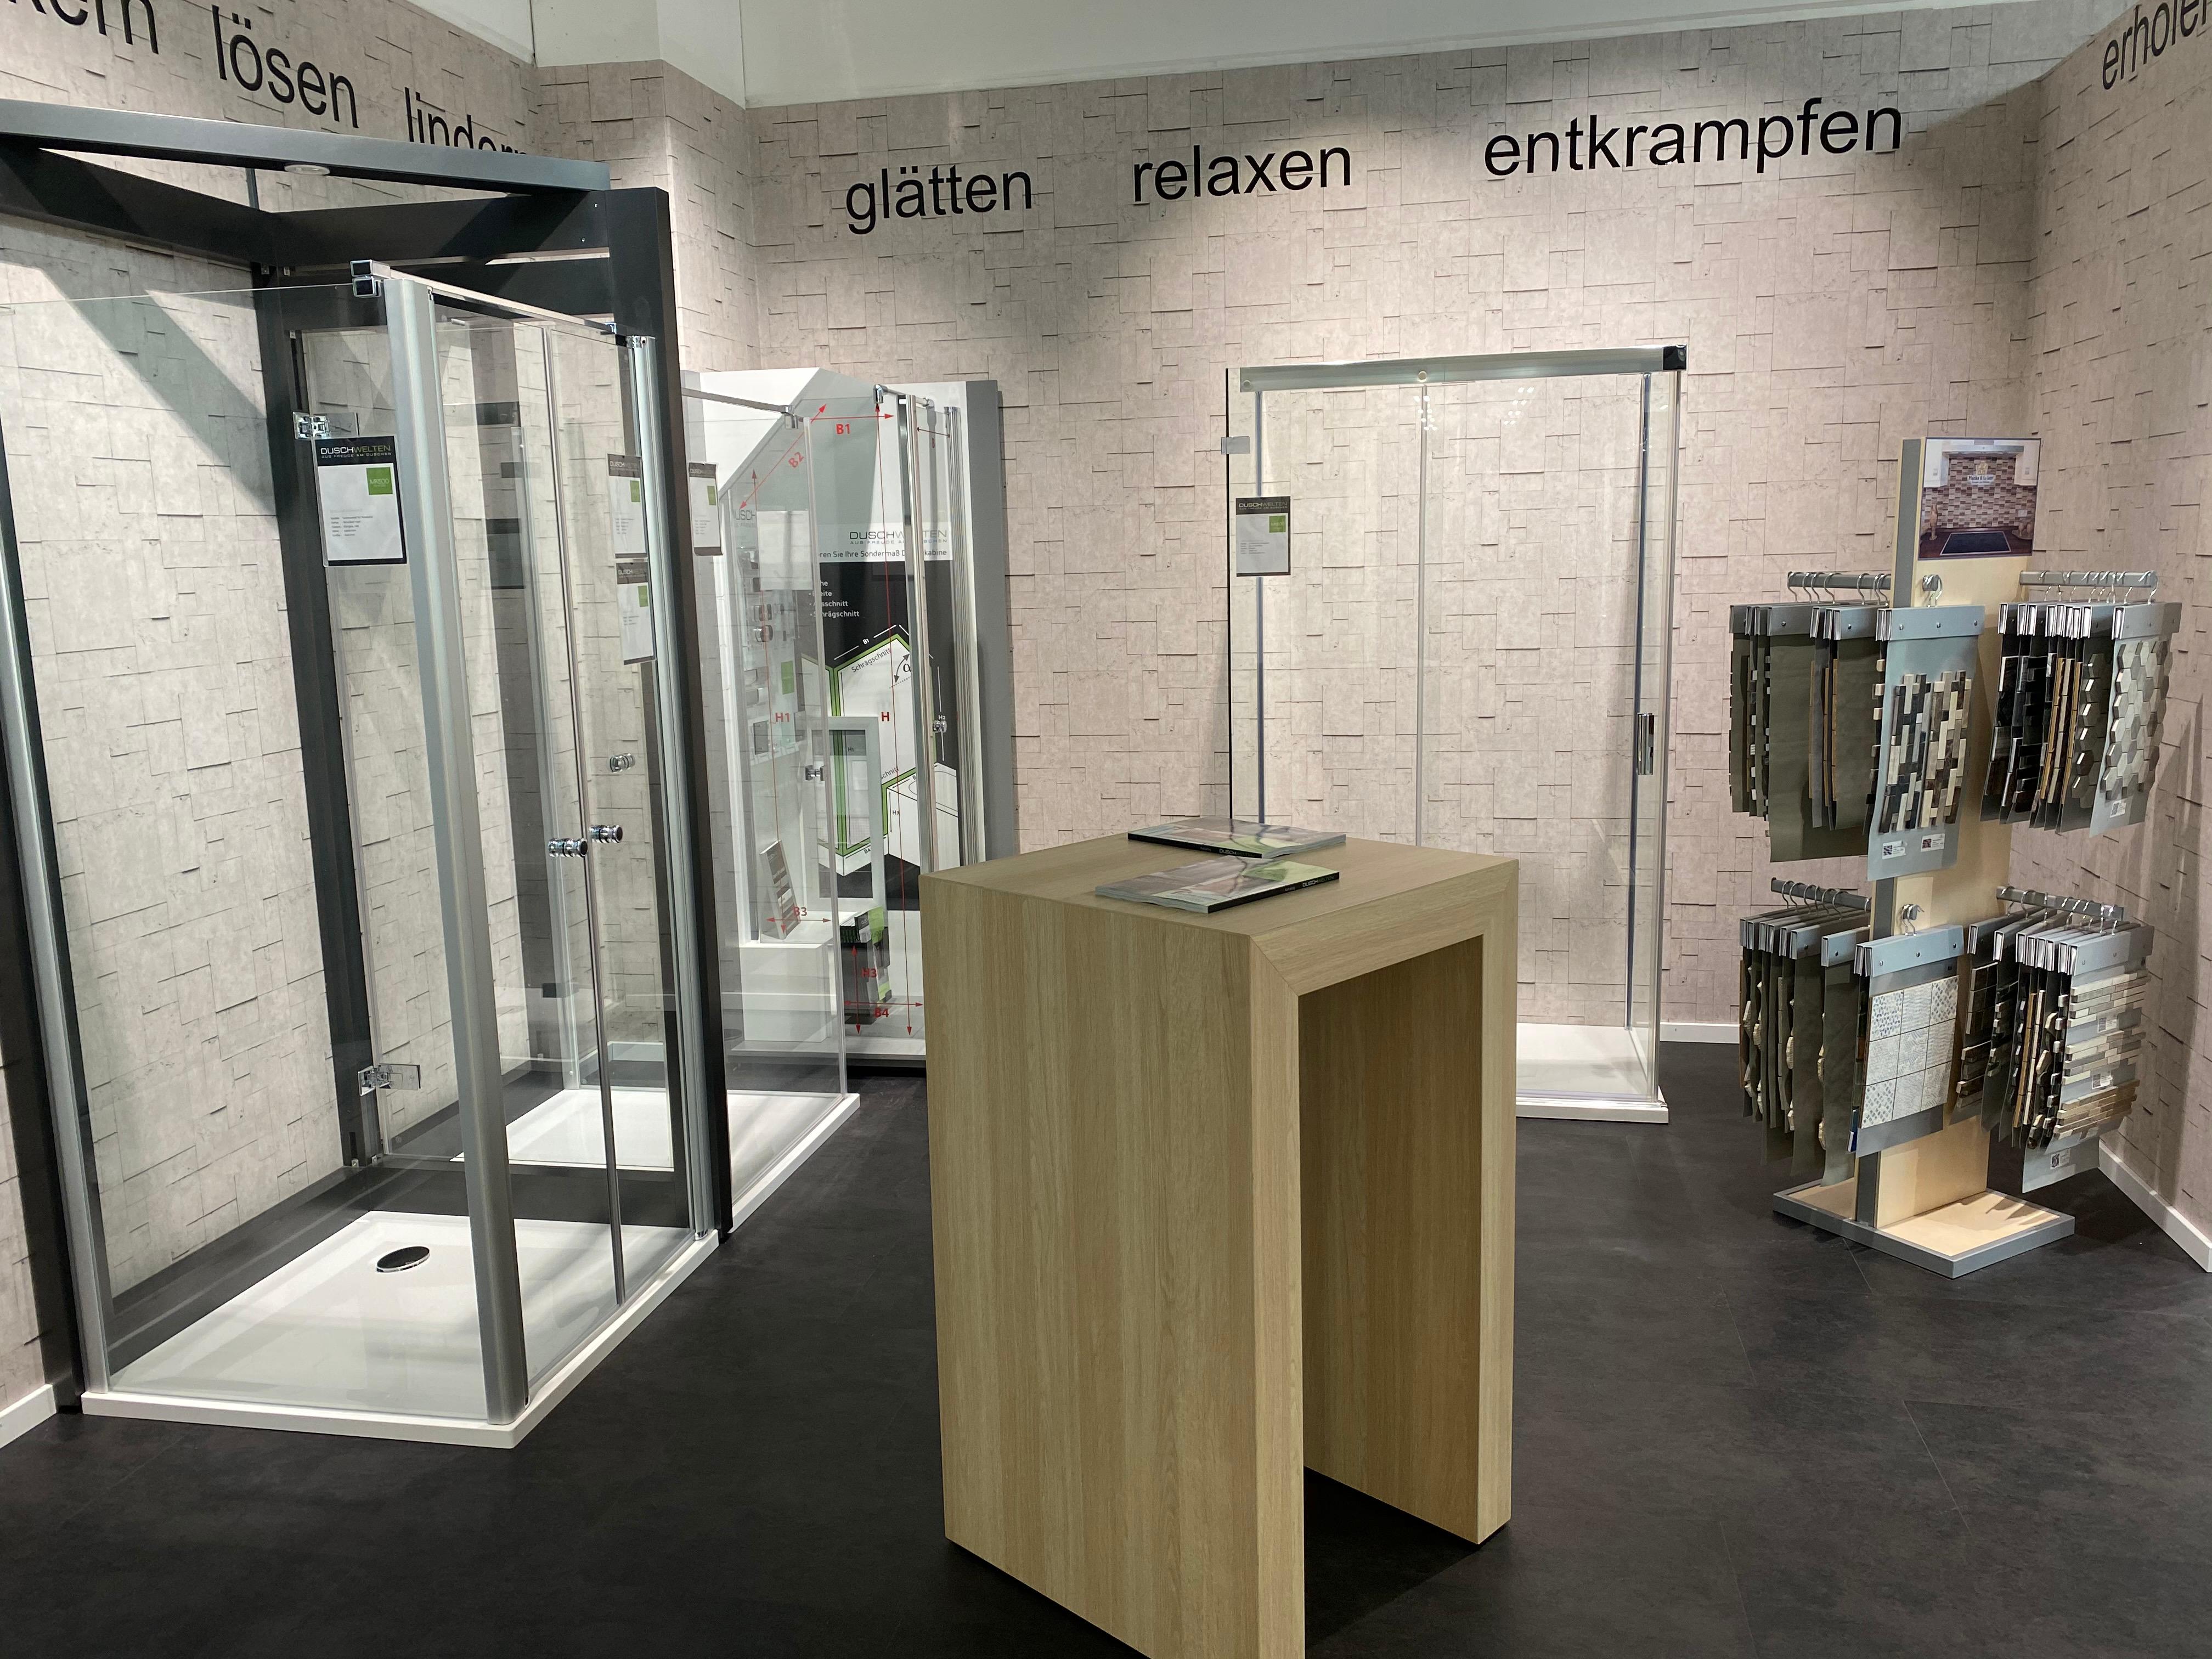 Kundenbild groß 13 BAUEN+LEBEN - Ihr Baufachhandel | Pick Baufachzentrum GmbH